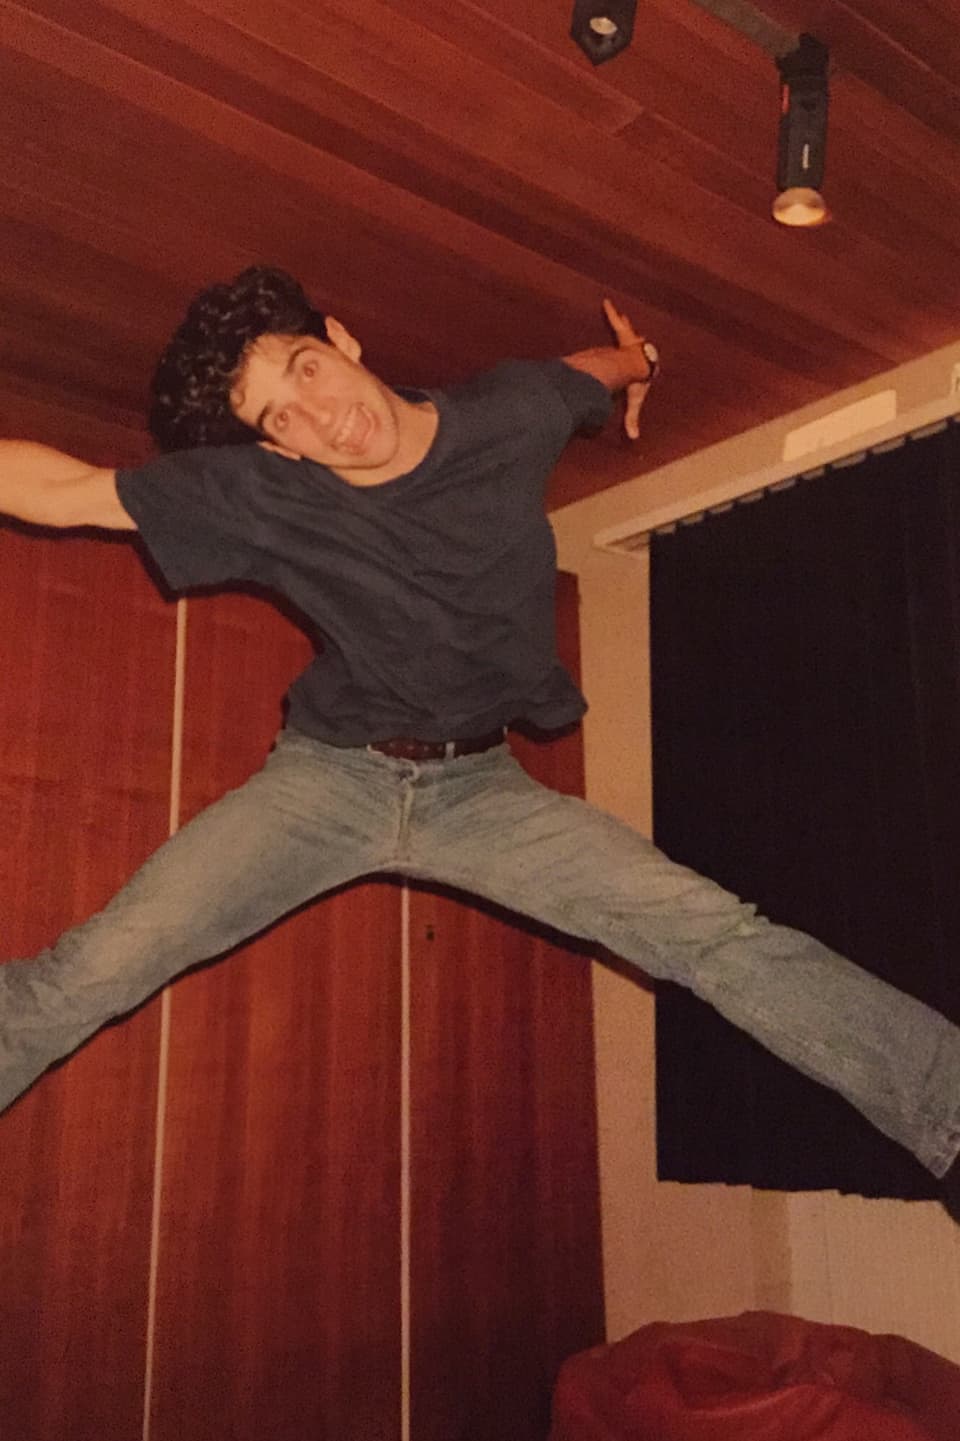 Philippe Gerber springt in einem holzgetäfertem Zimmer in die Luft.